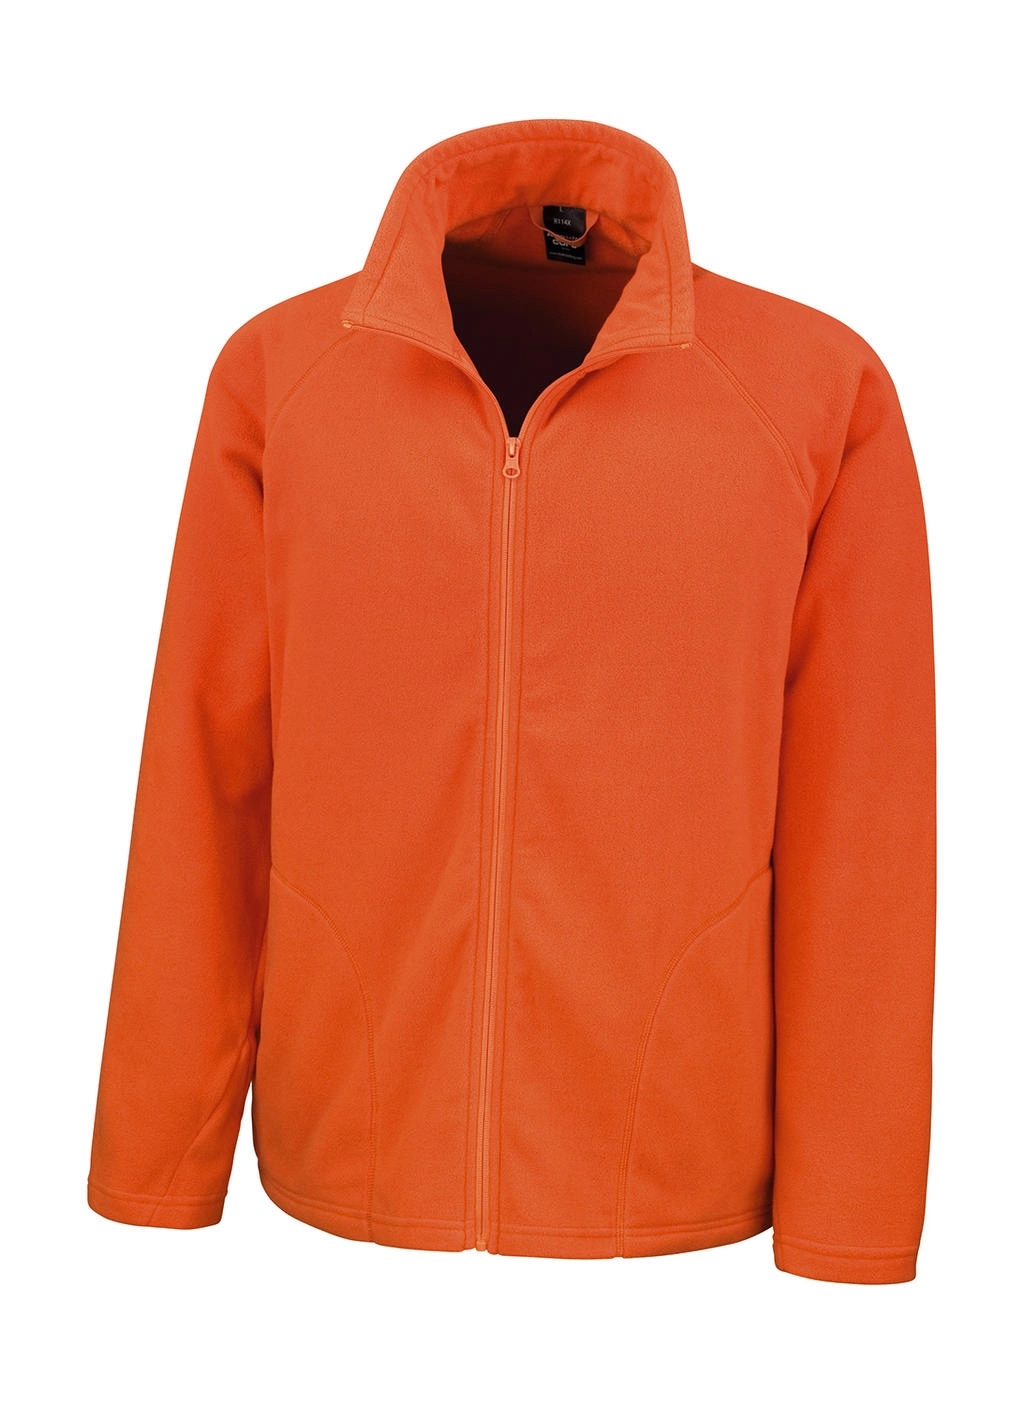 Microfleece Jacket zum Besticken und Bedrucken in der Farbe Orange mit Ihren Logo, Schriftzug oder Motiv.